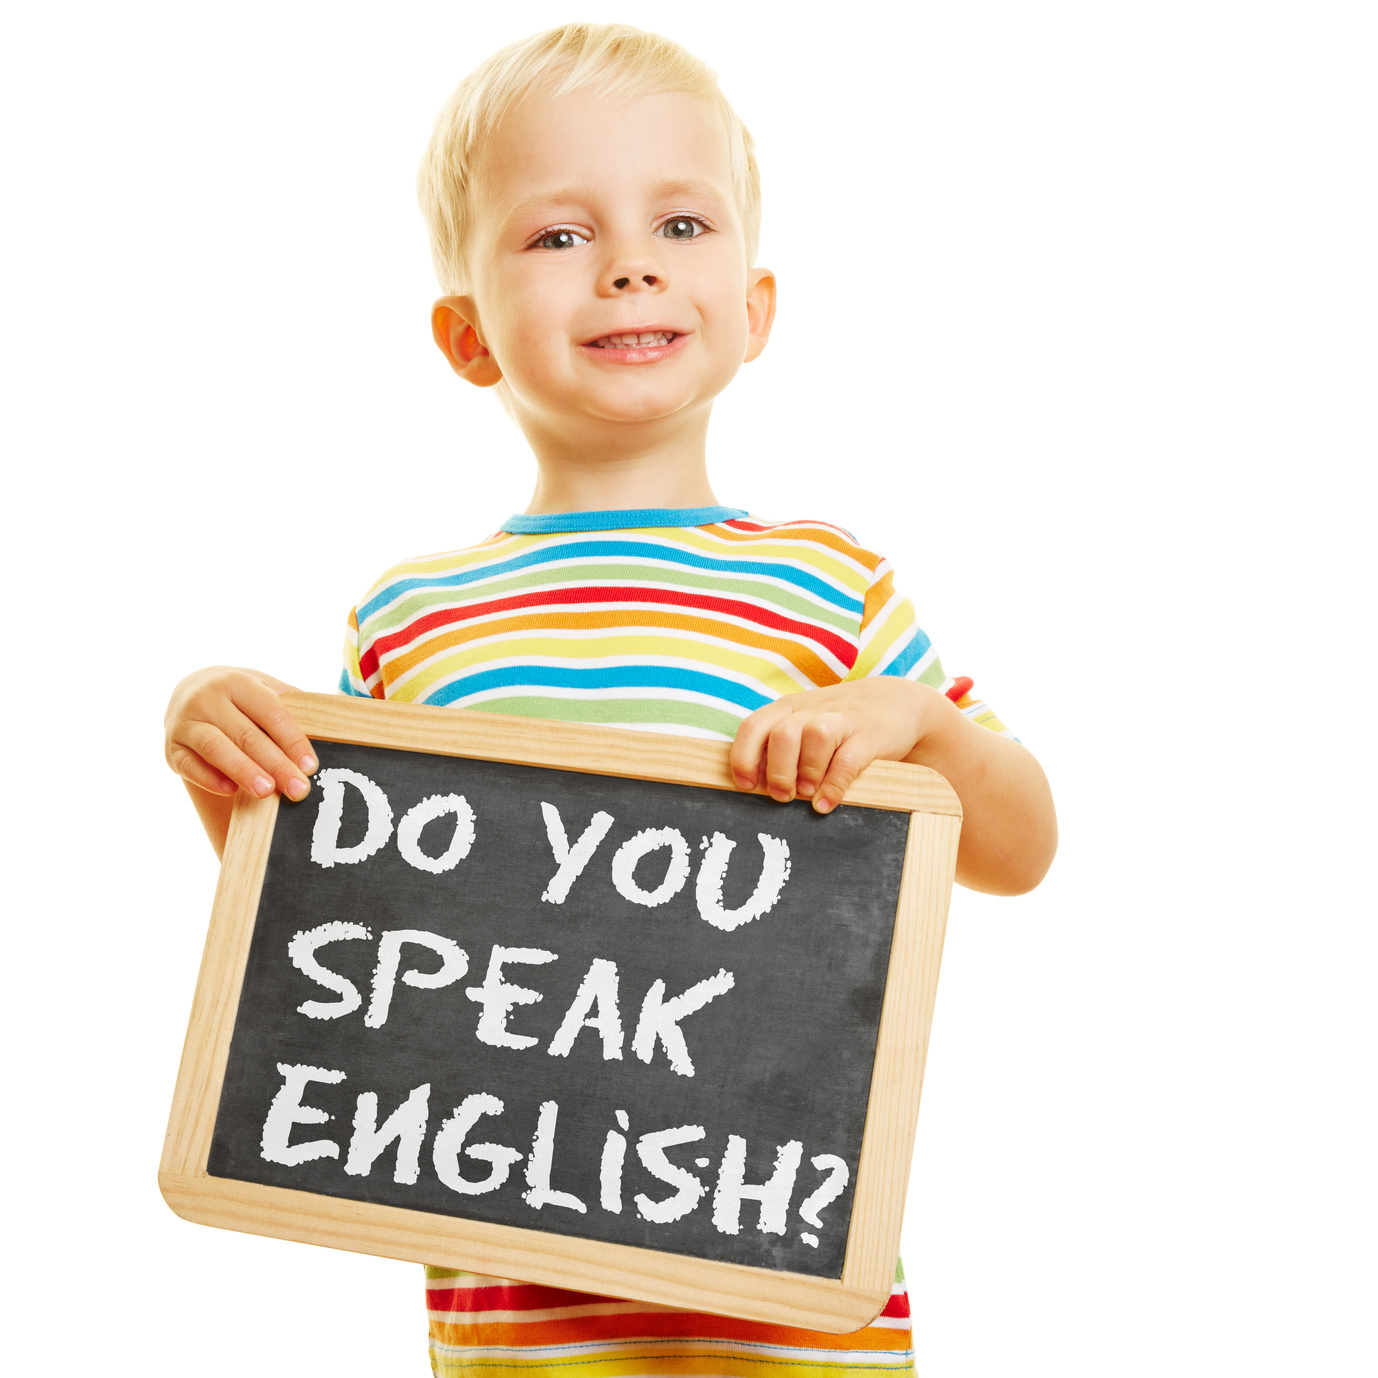 Да детка на английском. Английский язык длядеетй. Английский для детей. Английский язык для детей. Иностранные языки для детей.